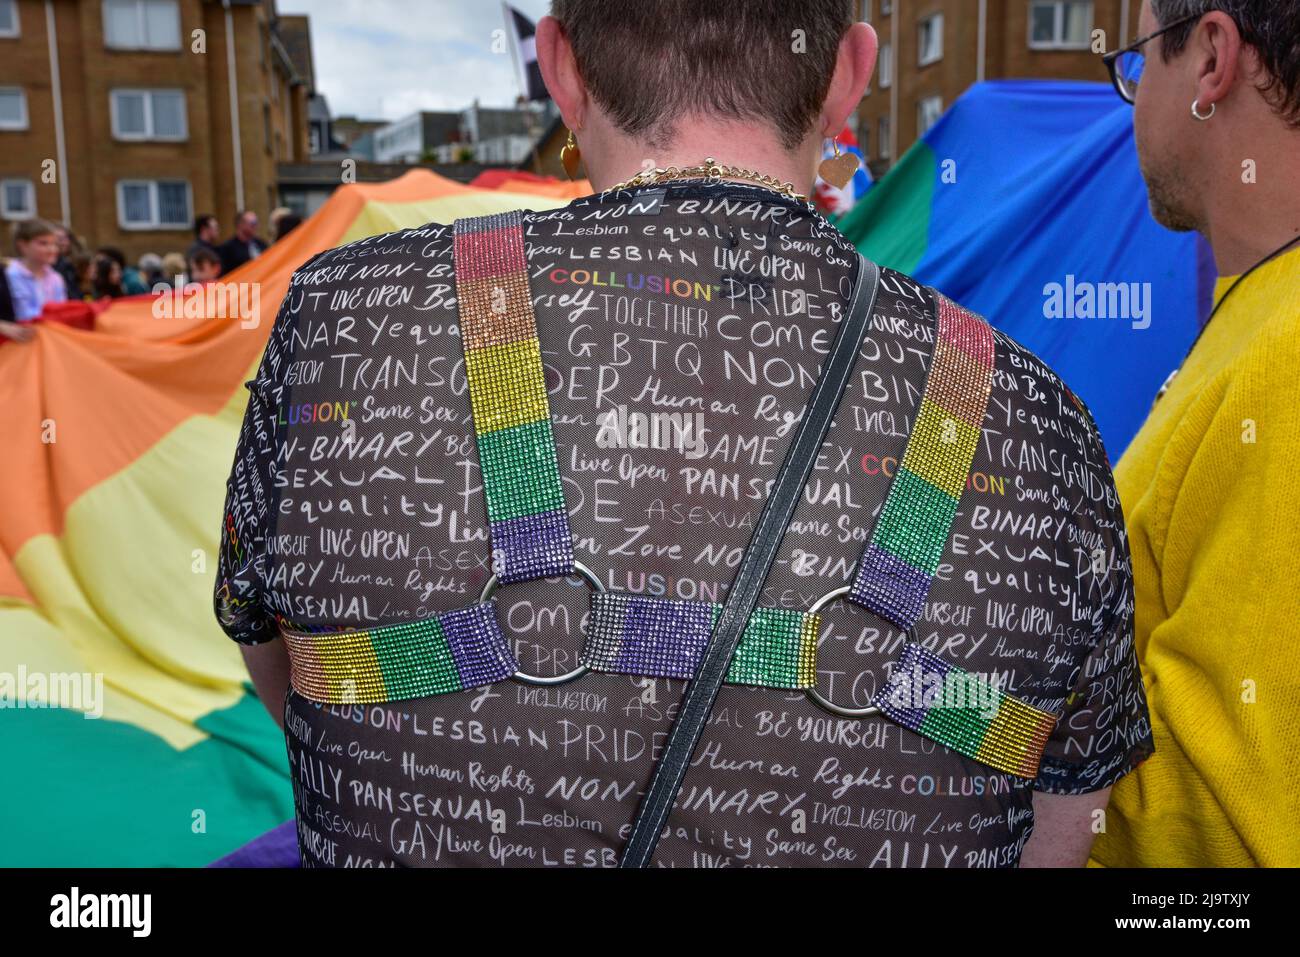 Le T-shirt porté par un participant au vibrant Cornouailles prides Pride parade de fierté dans le centre-ville de Newquay au Royaume-Uni. Banque D'Images